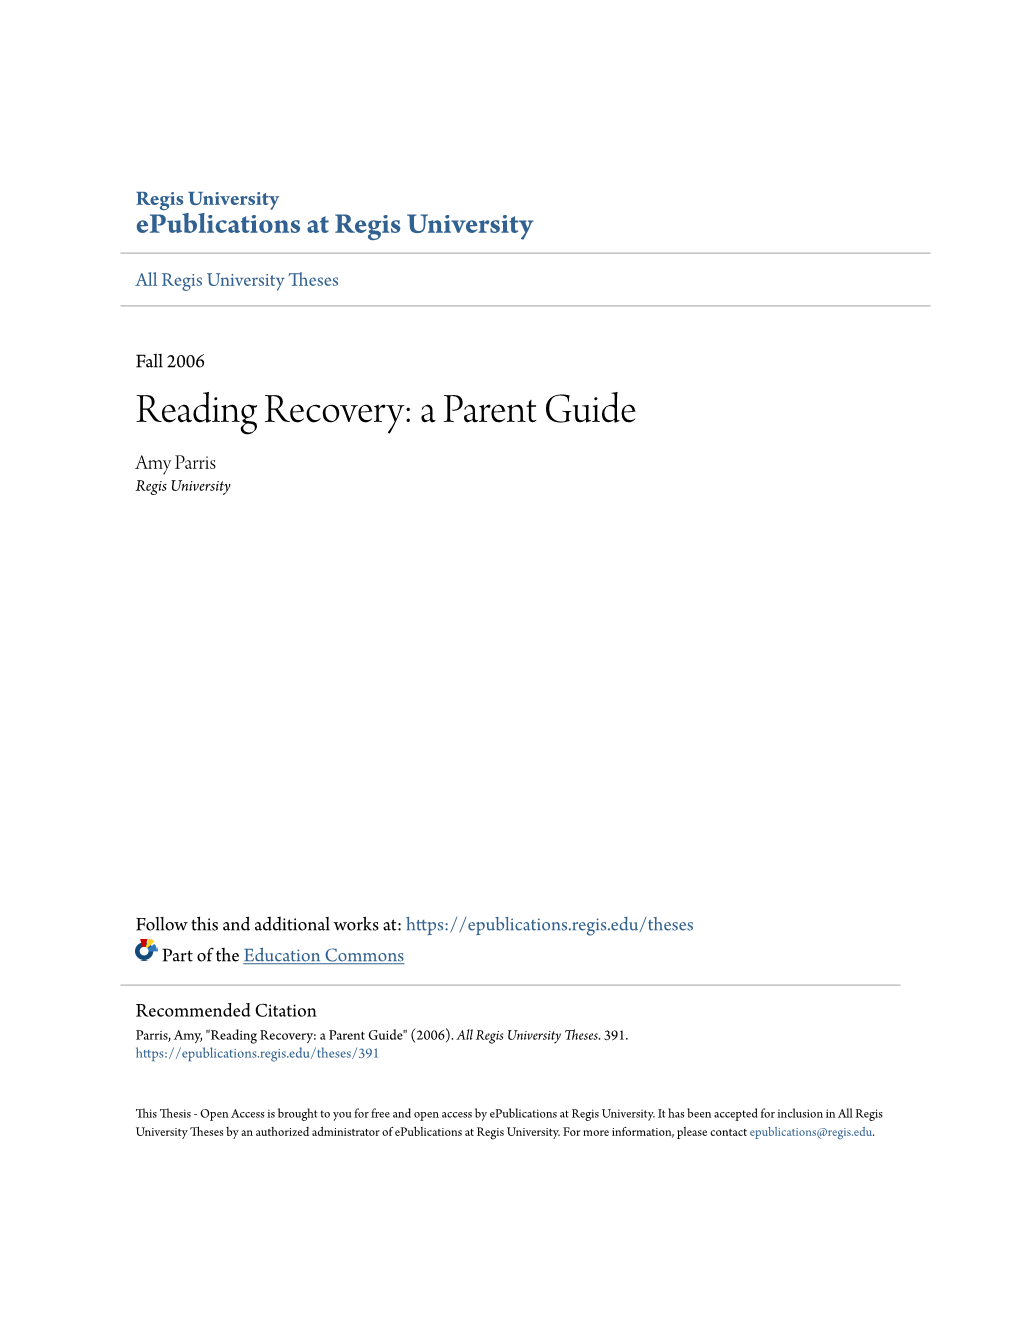 Reading Recovery: a Parent Guide Amy Parris Regis University